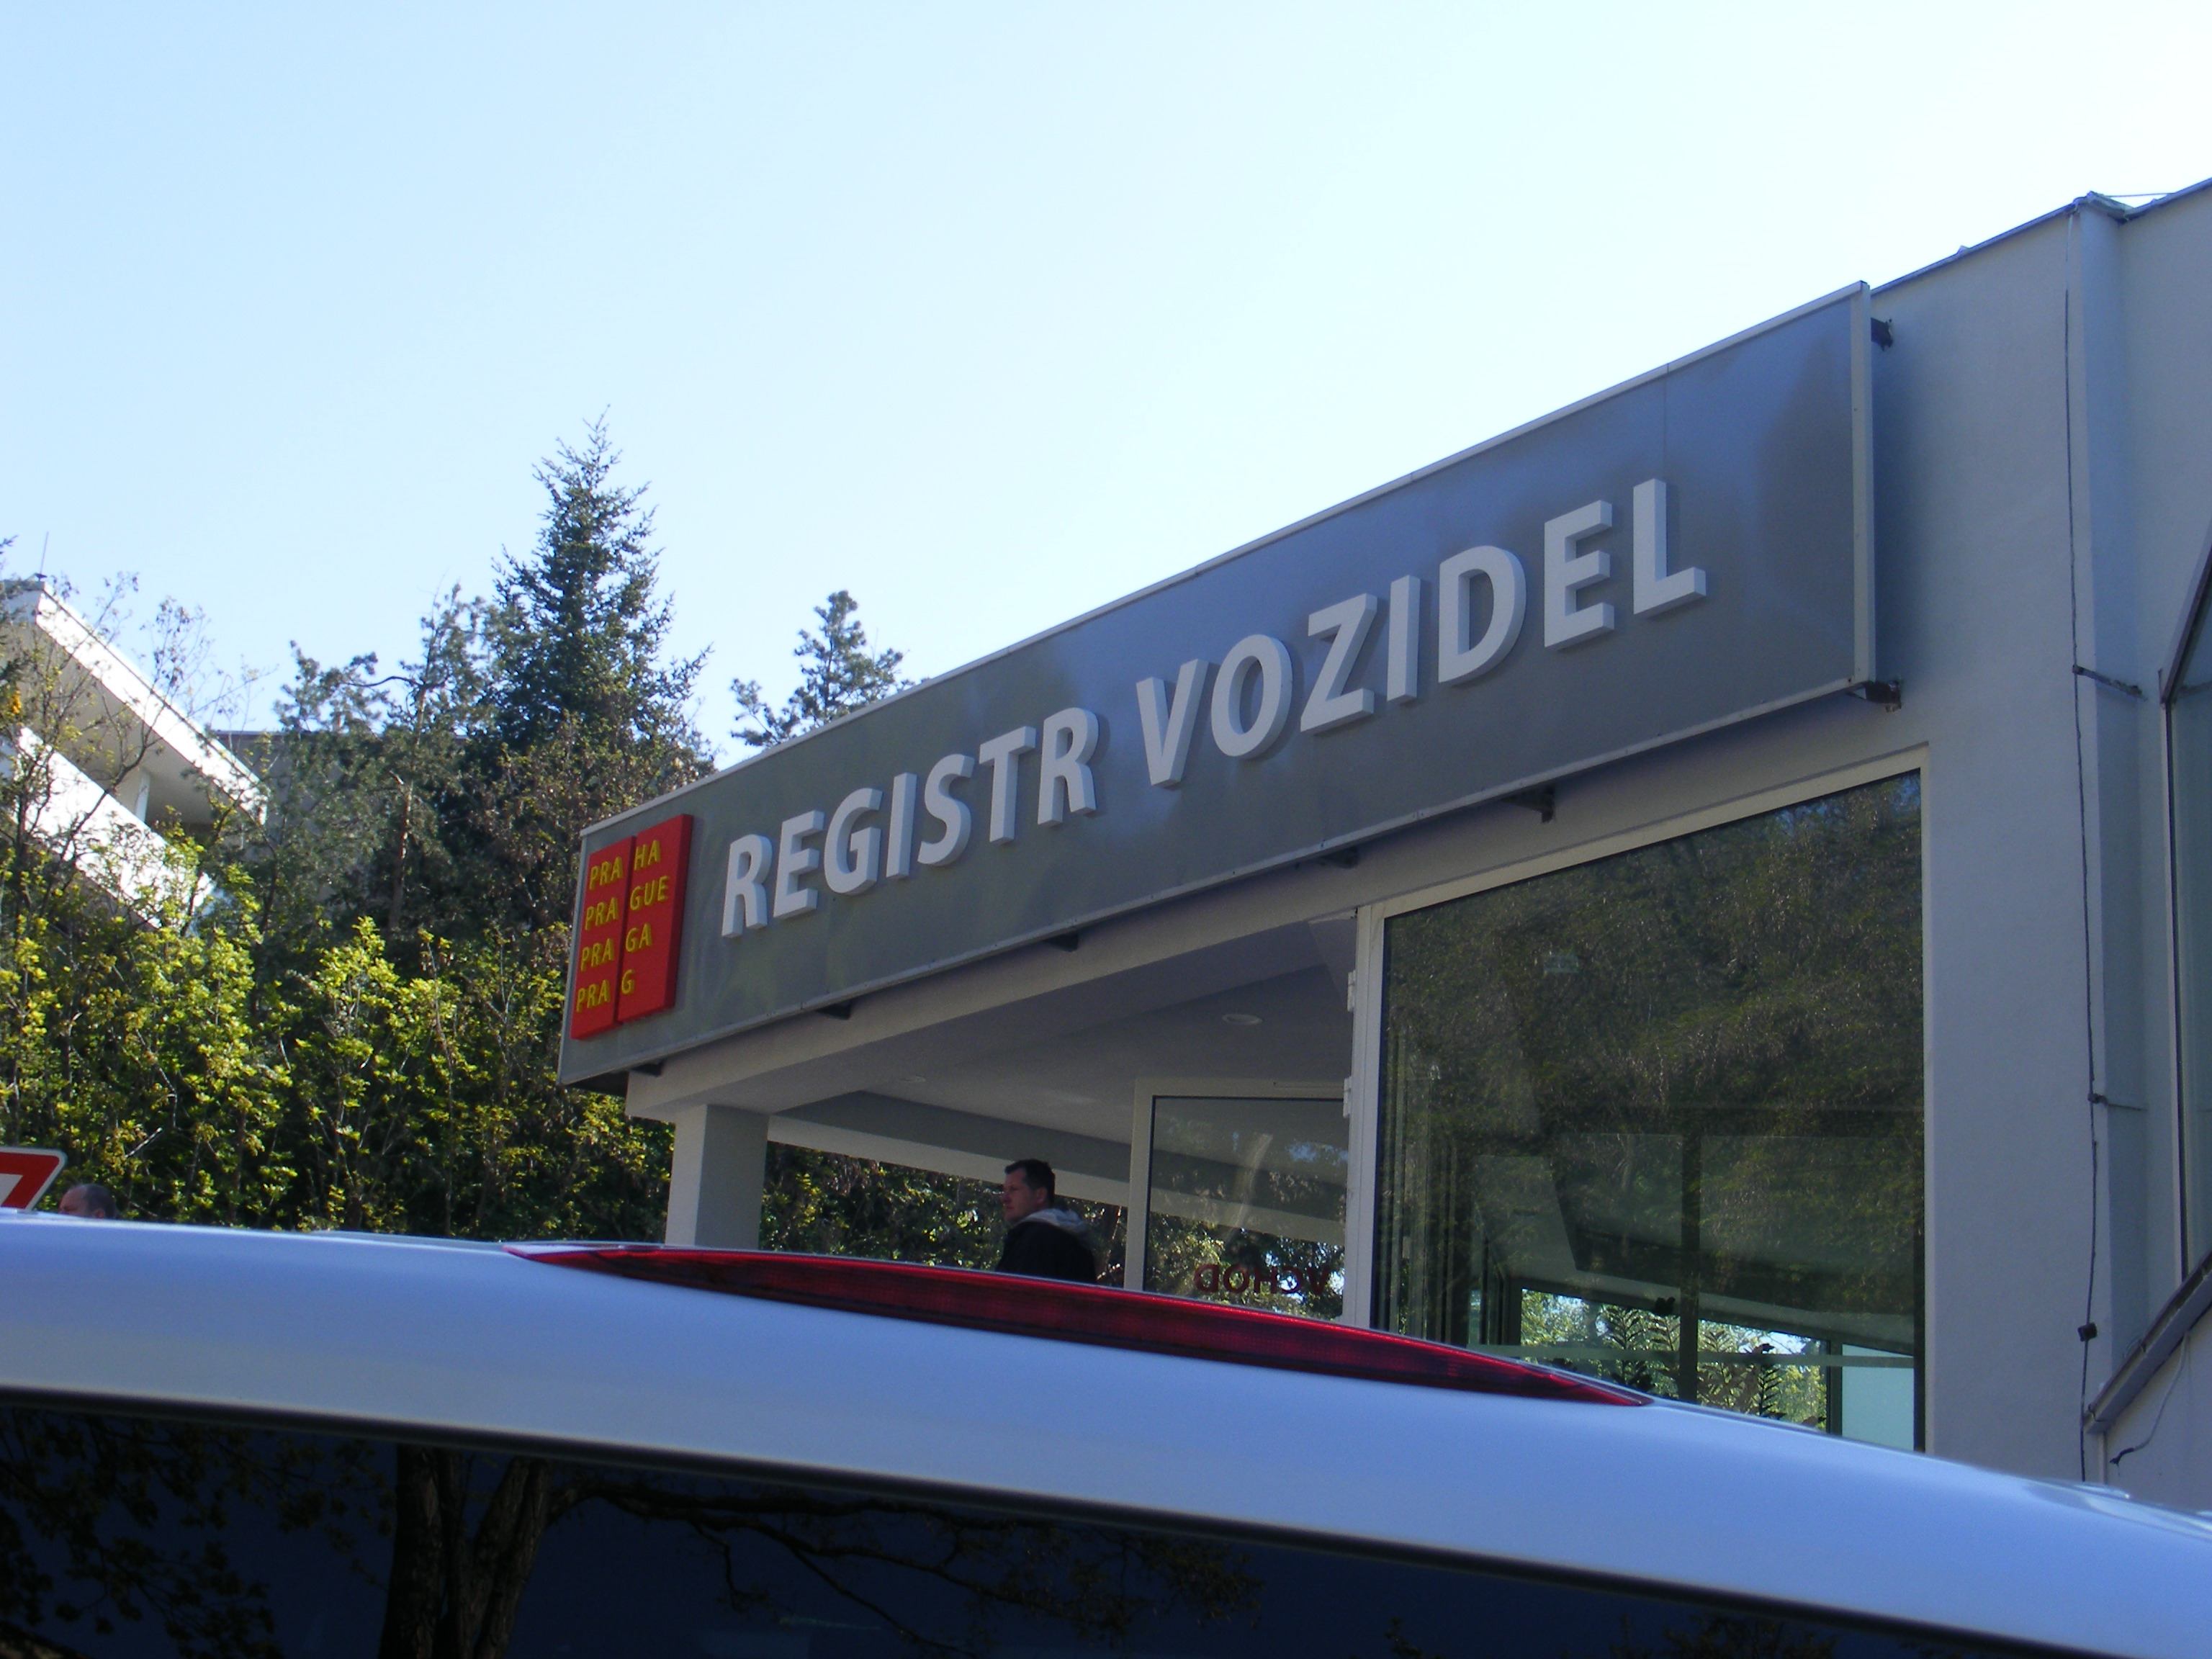 Pracoviště registru vozidel v Břevnově